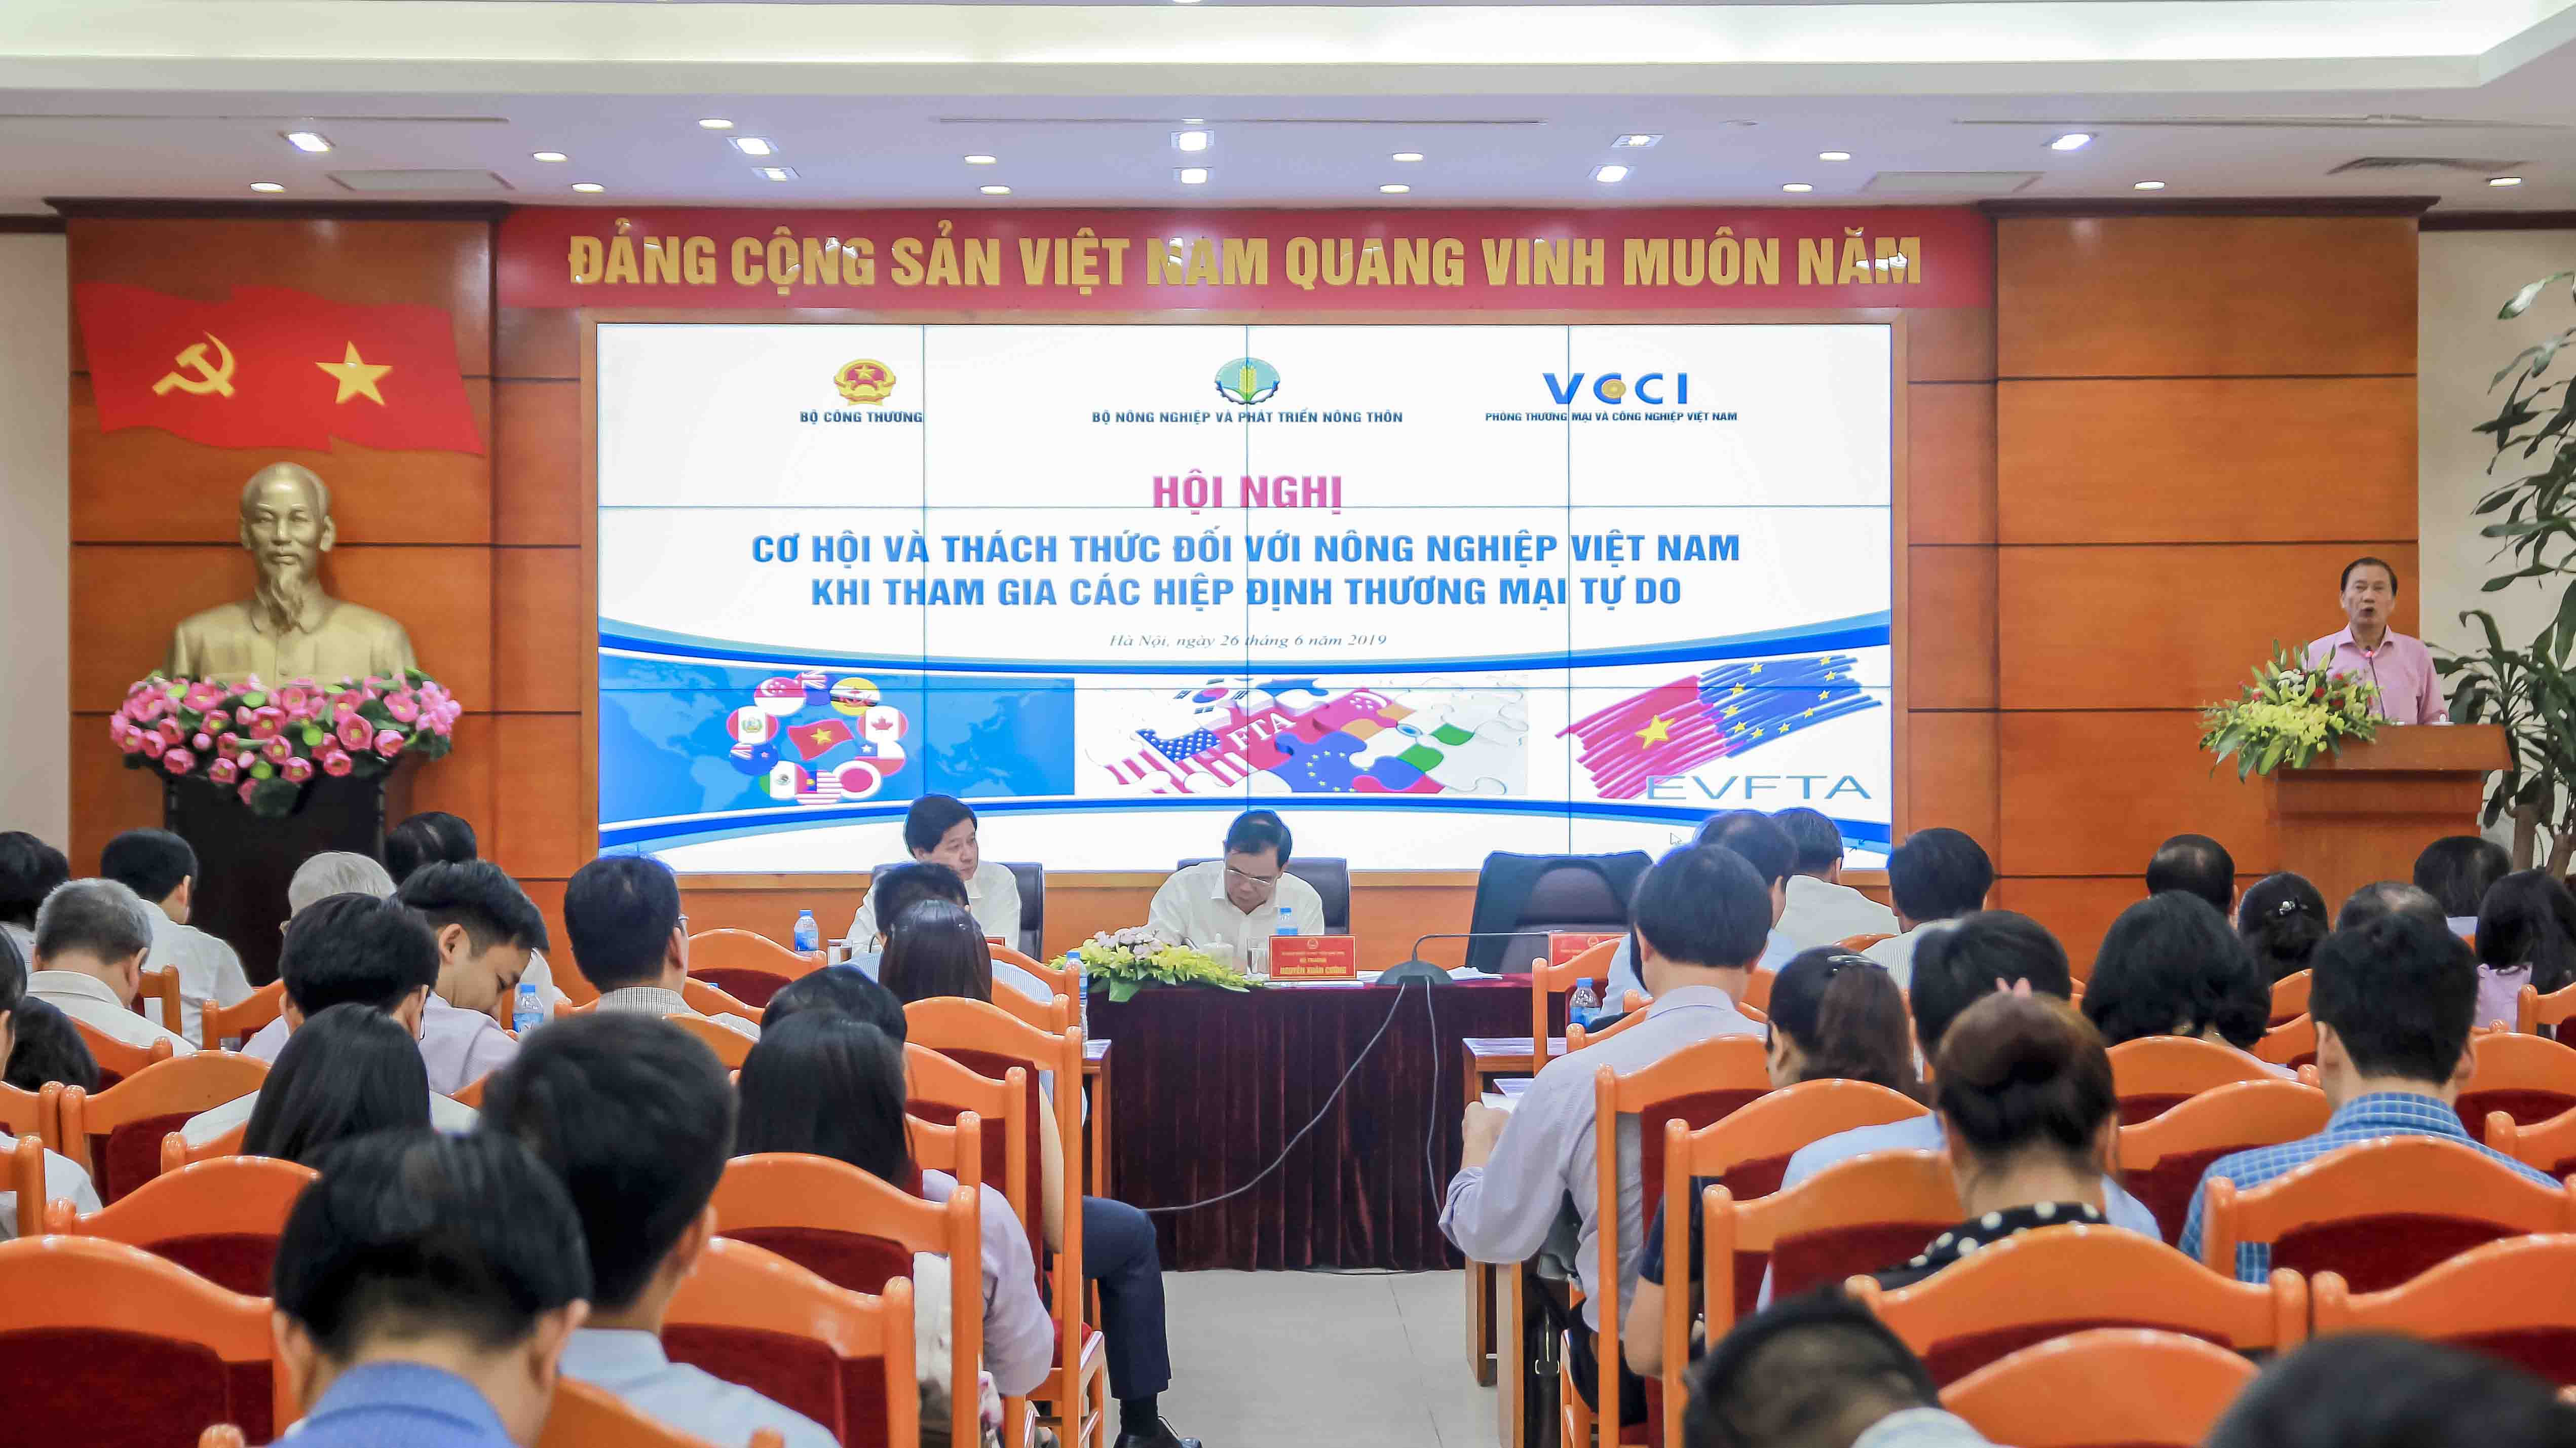 Hội nghị Cơ hội và thách thức đối với nông nghiệp Việt Nam khi tham gia các Hiệp định thương mại tự do